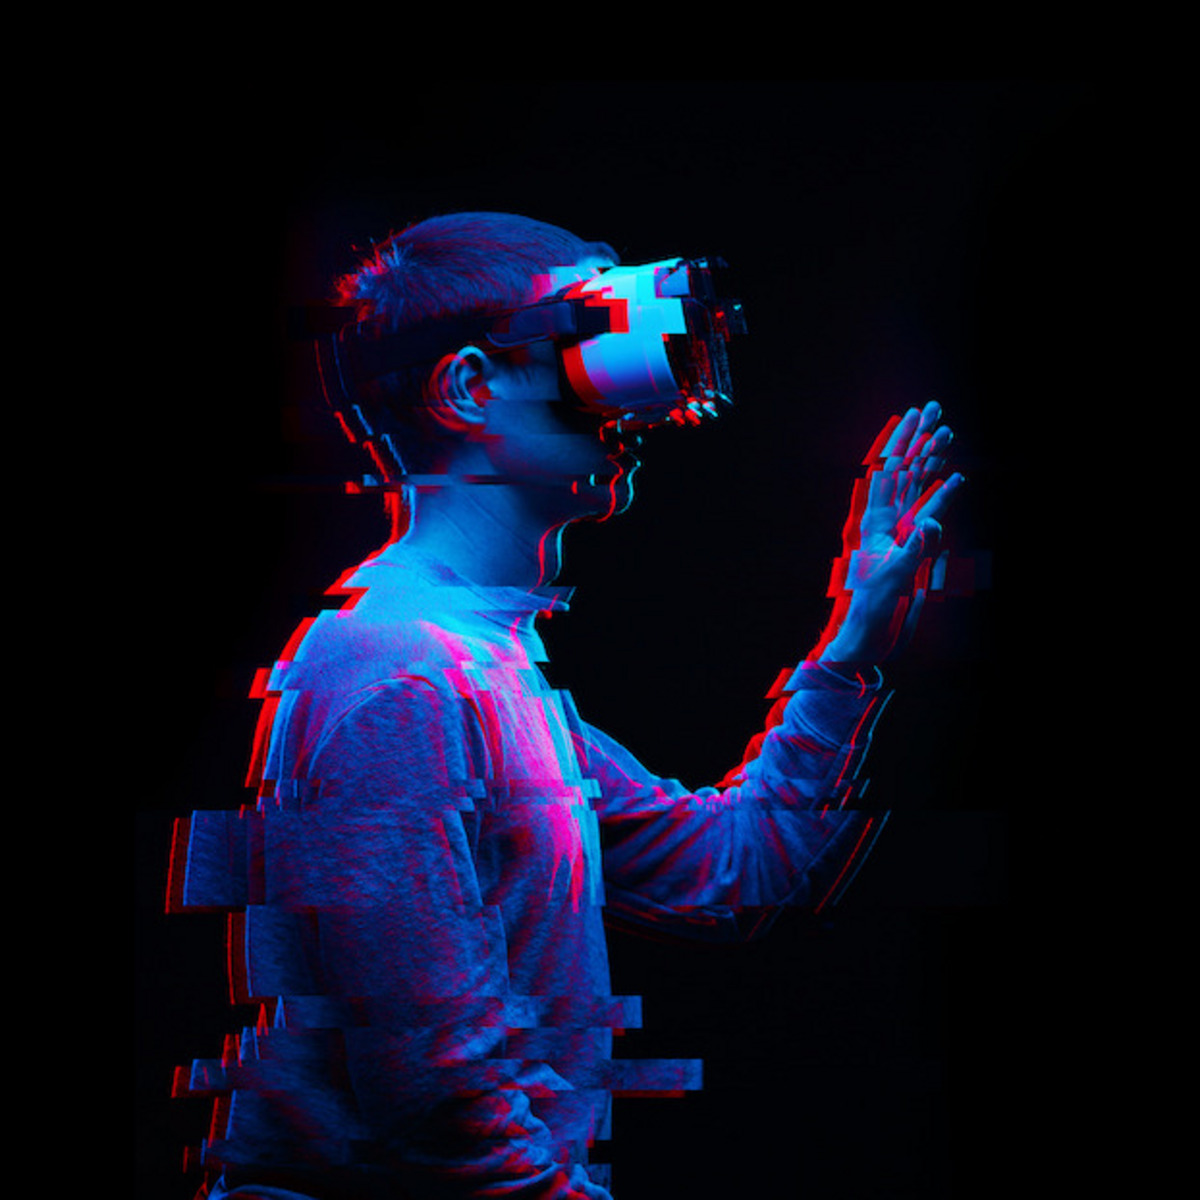 Eine Person trägt eine Virtual-Reality-Brille und greift mit der Hand in der Luft.